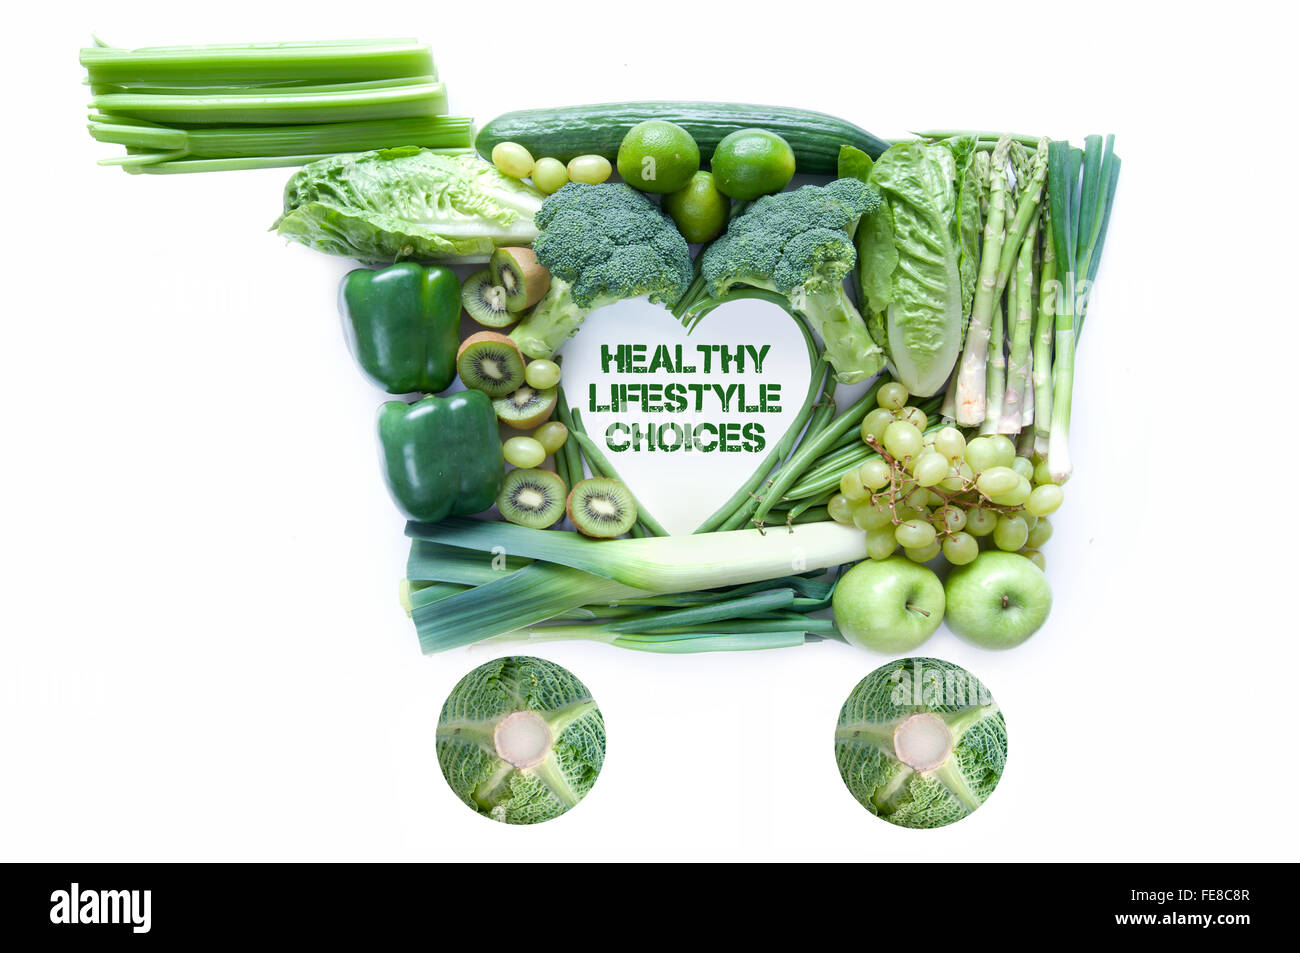 Fresco verde negozi di generi alimentari in forma di un carrello della spesa con uno stile di vita sano scelte nel centro Foto Stock